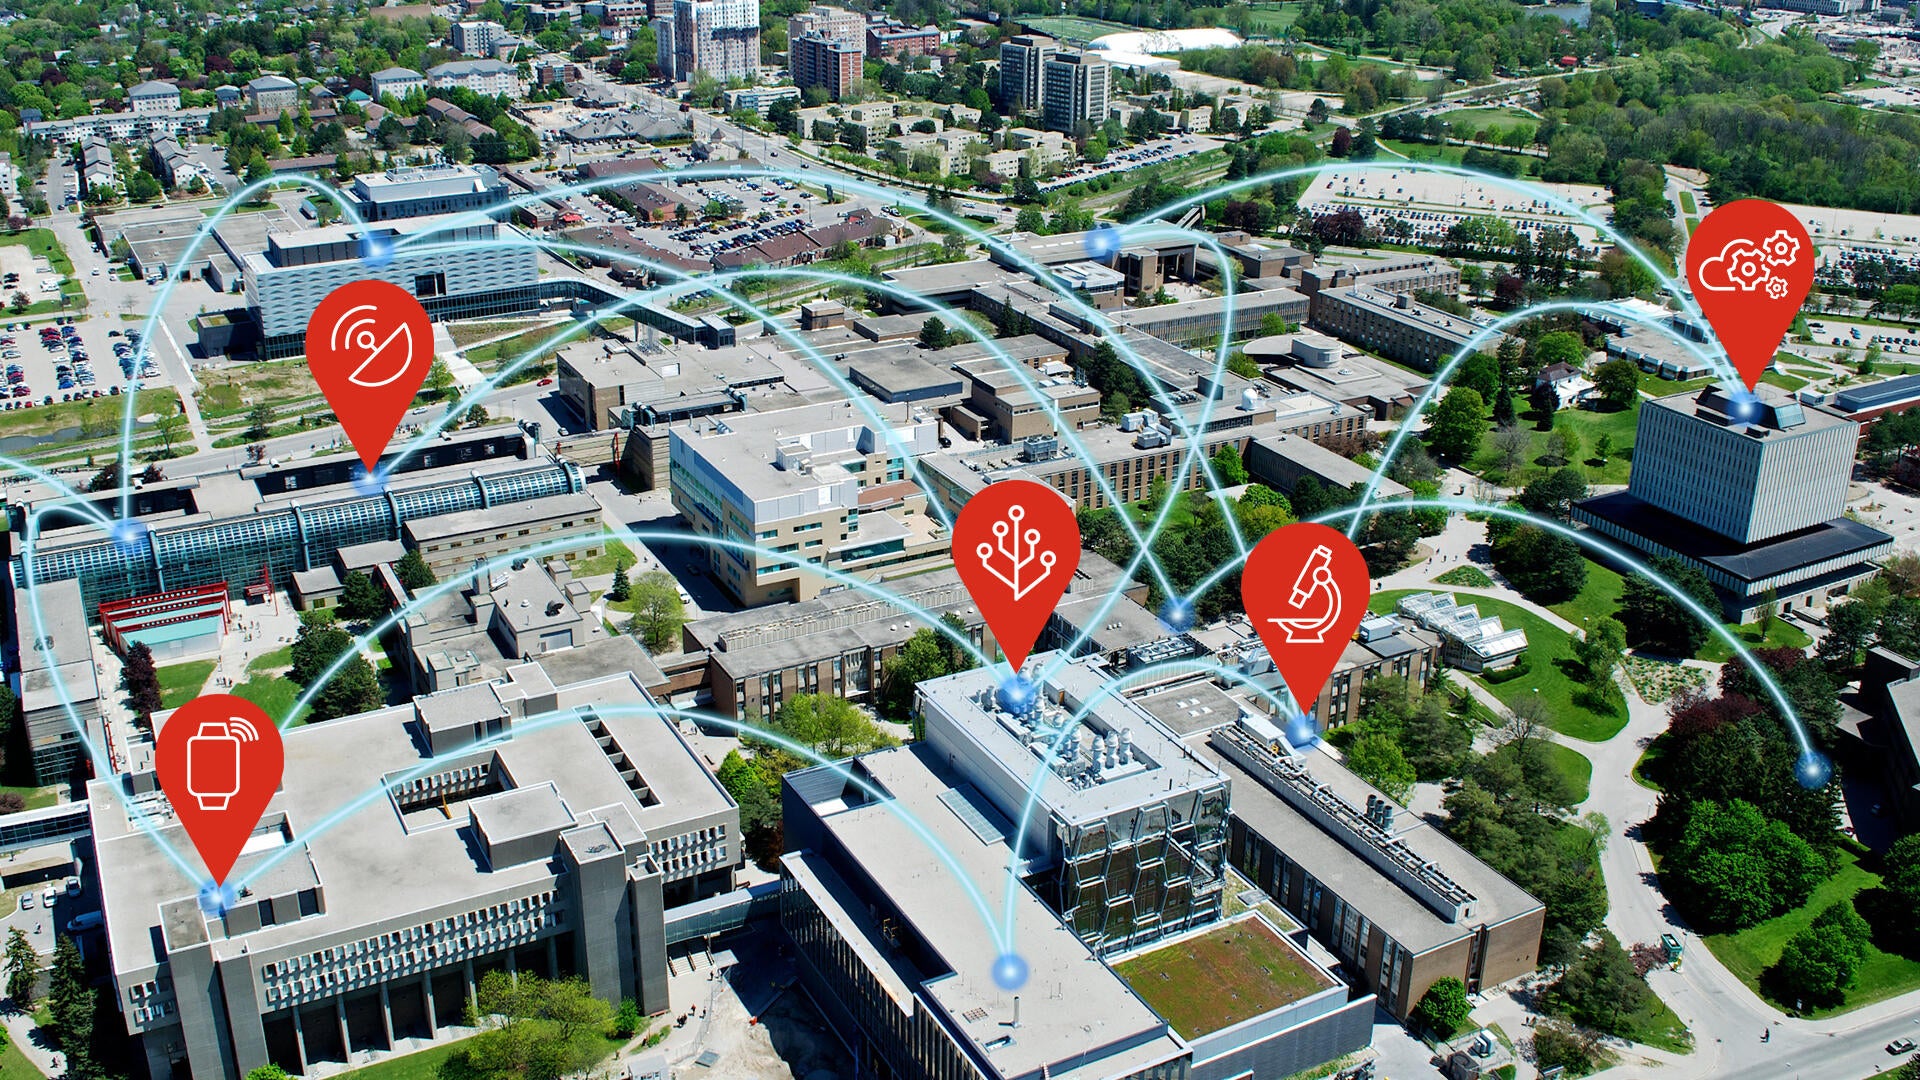 Aerial image of Waterloo Campus